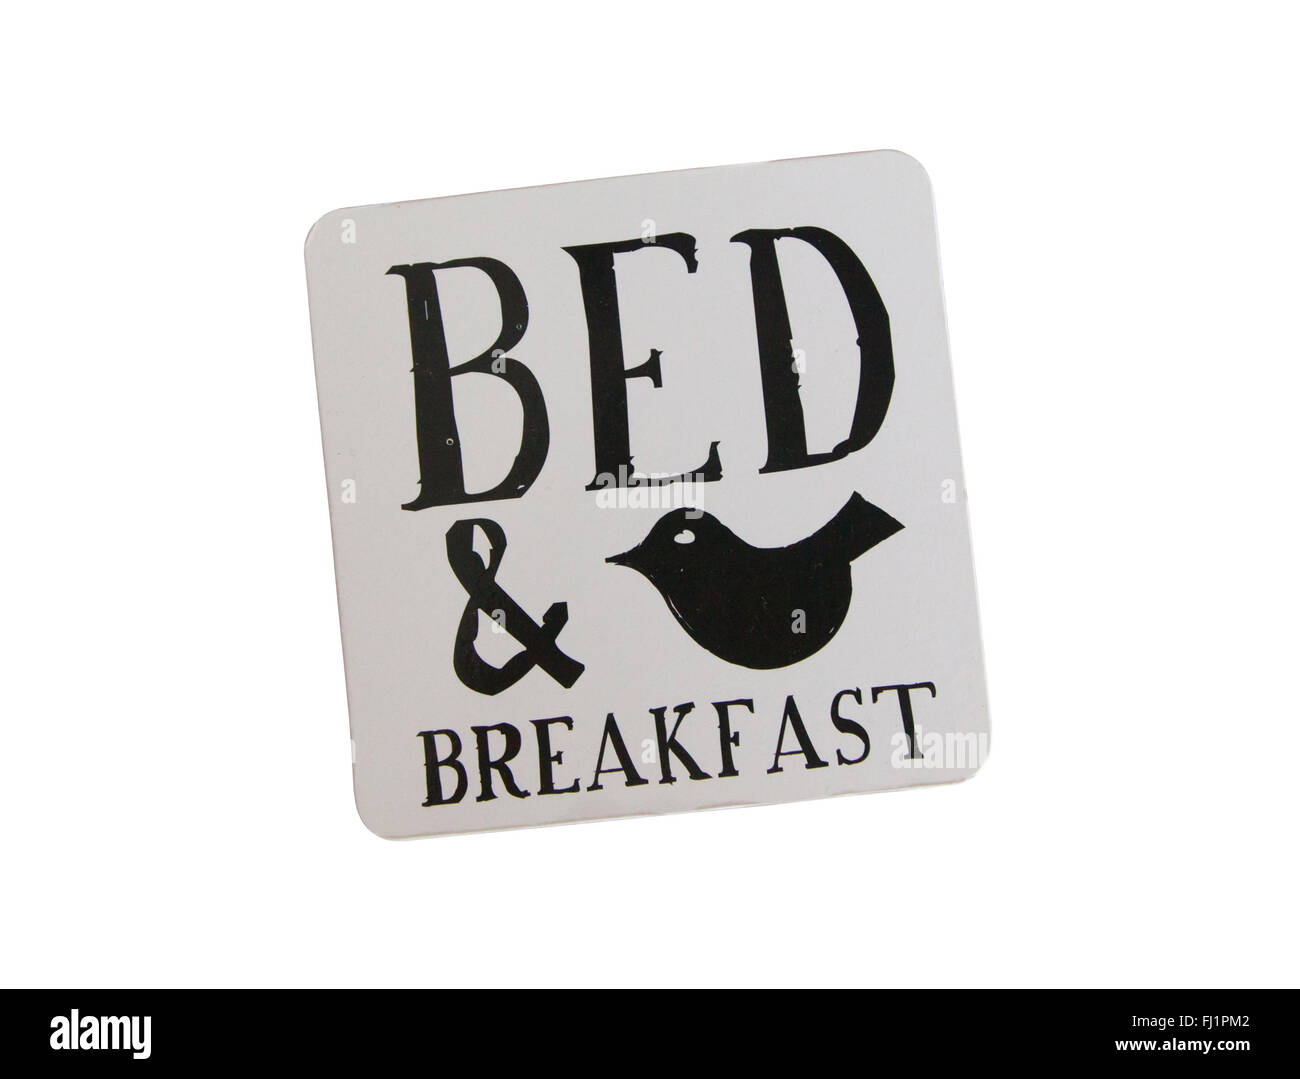 Unico coaster in un bed and breakfast, isolato Foto Stock